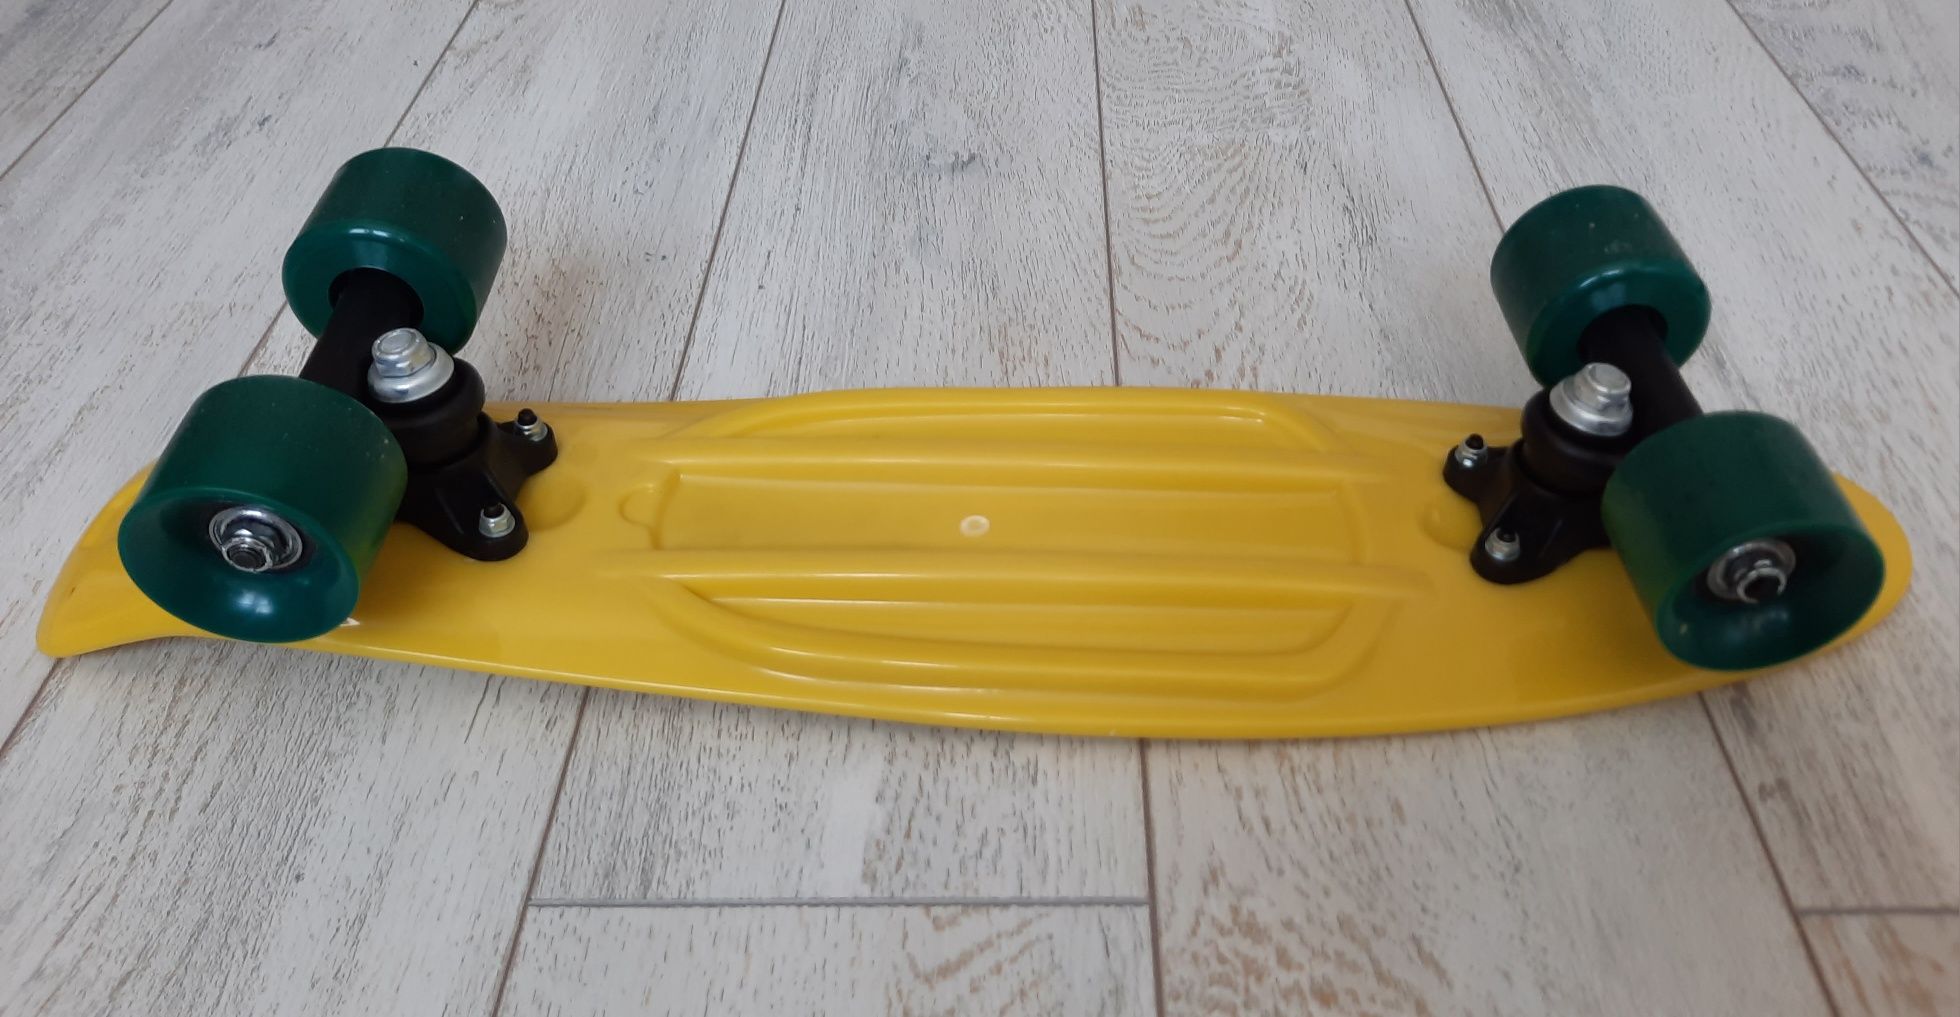 Skateboard copii galben cu roti verzi